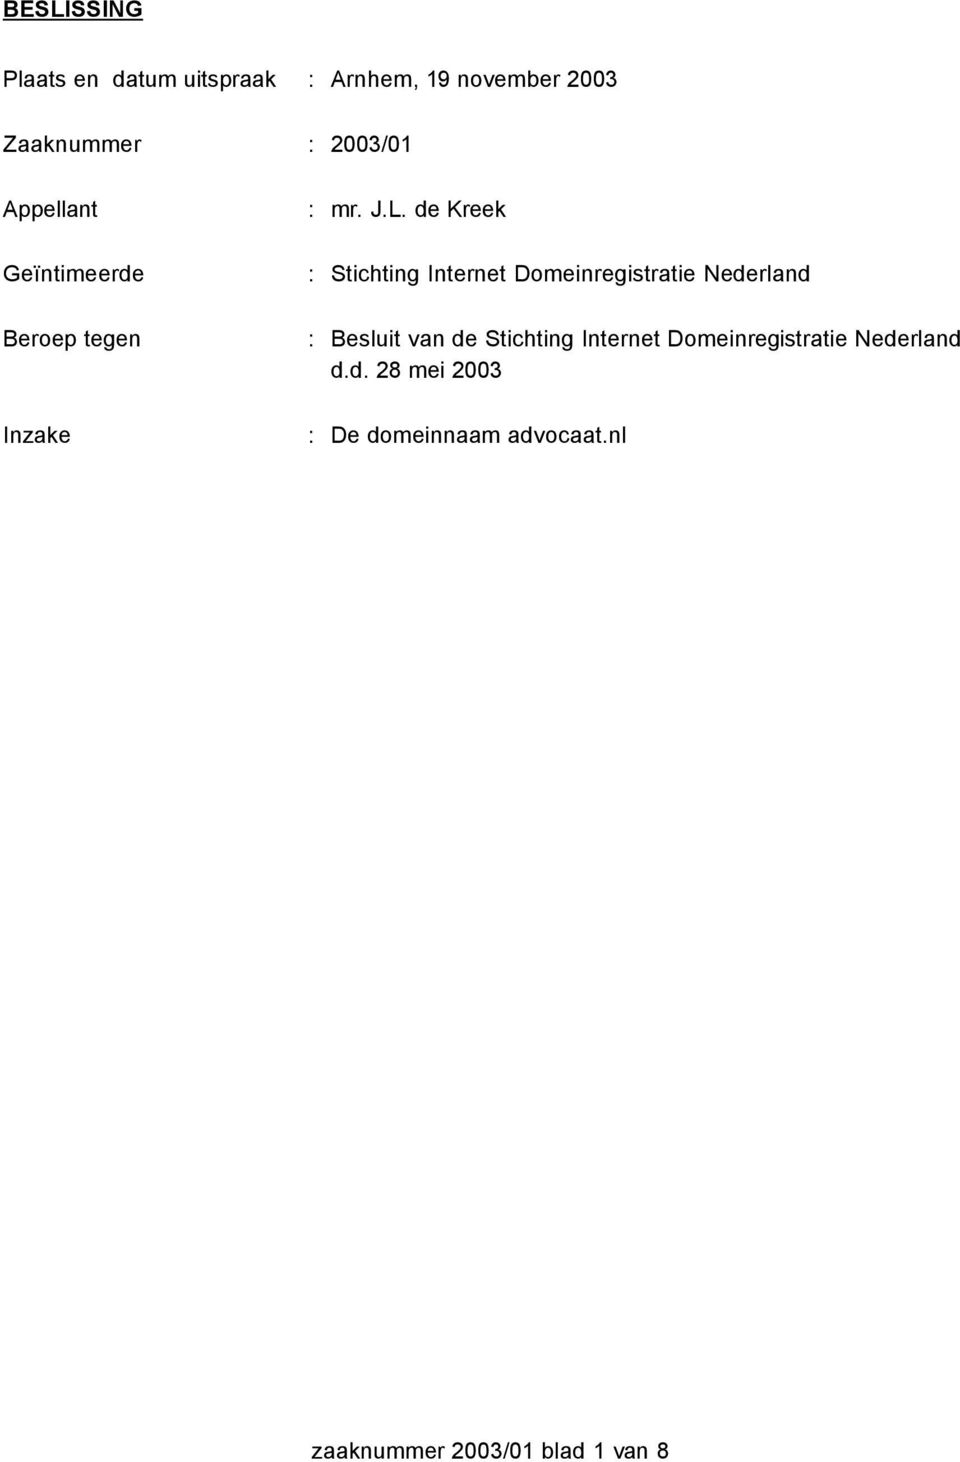 de Kreek Geïntimeerde : Stichting Internet Domeinregistratie Nederland Beroep tegen